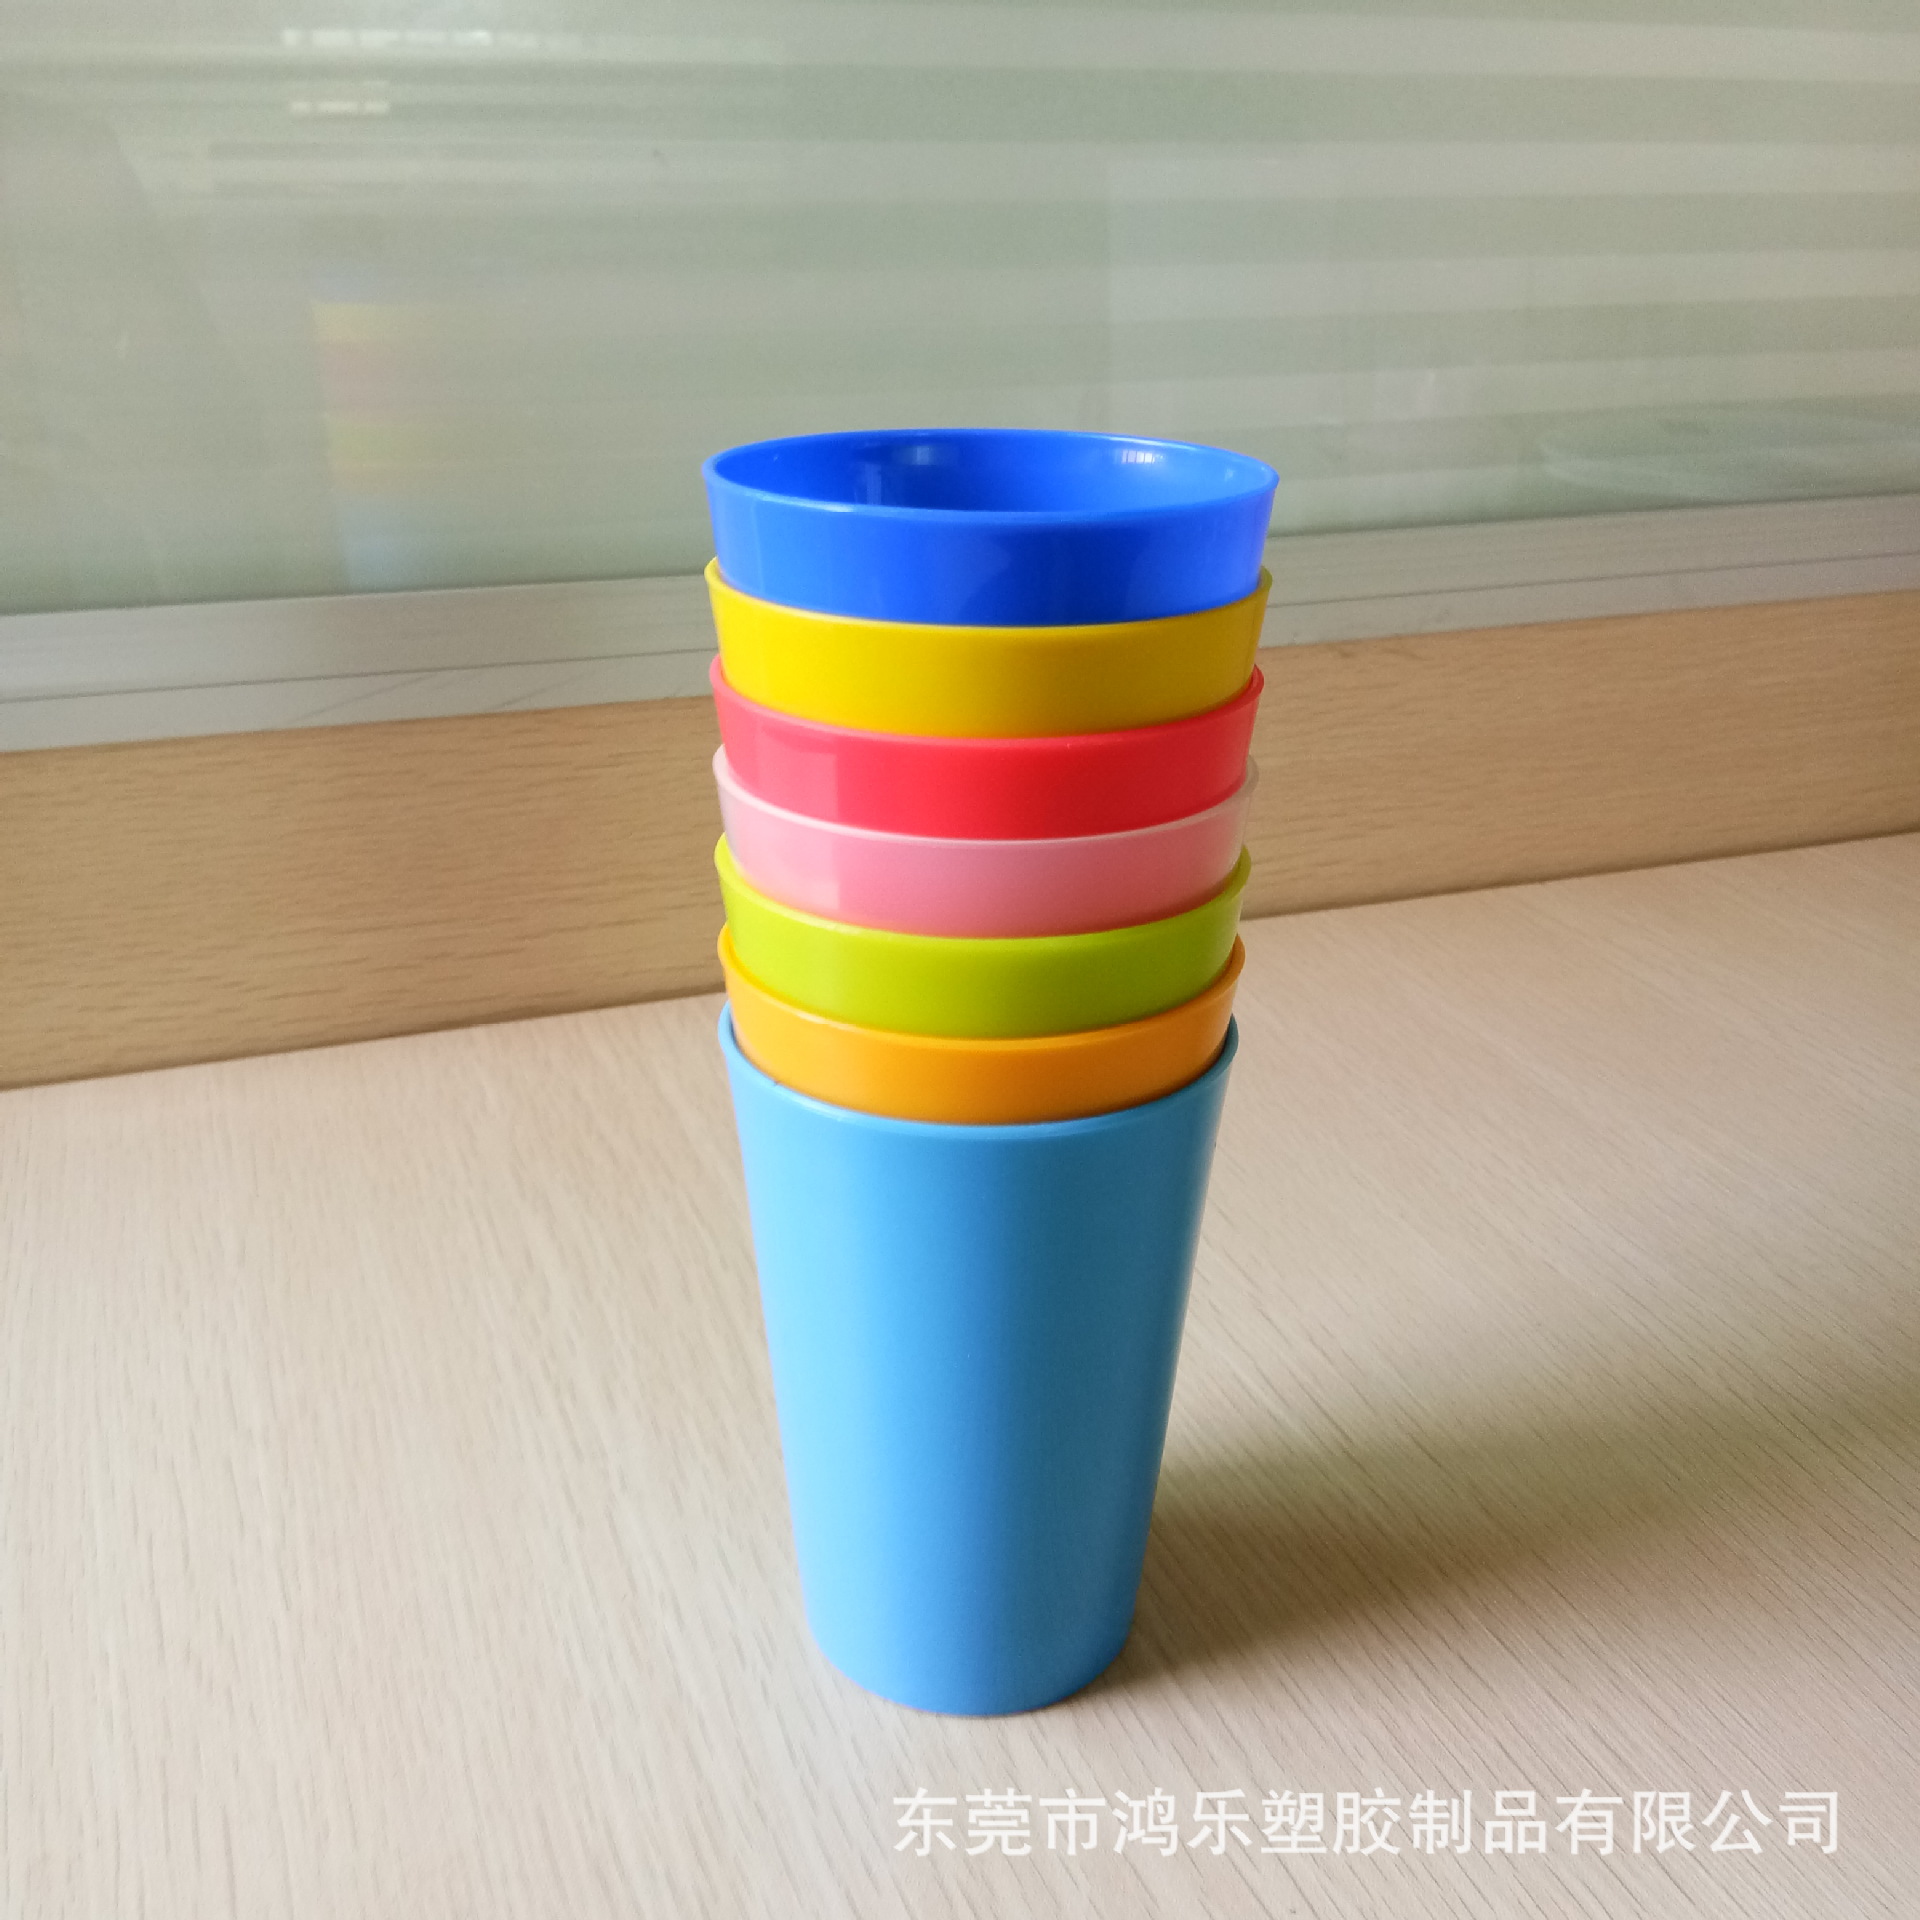 出口日本食品级彩色PP塑料杯红色塑料饮料杯厂家直销广告杯礼品杯示例图21